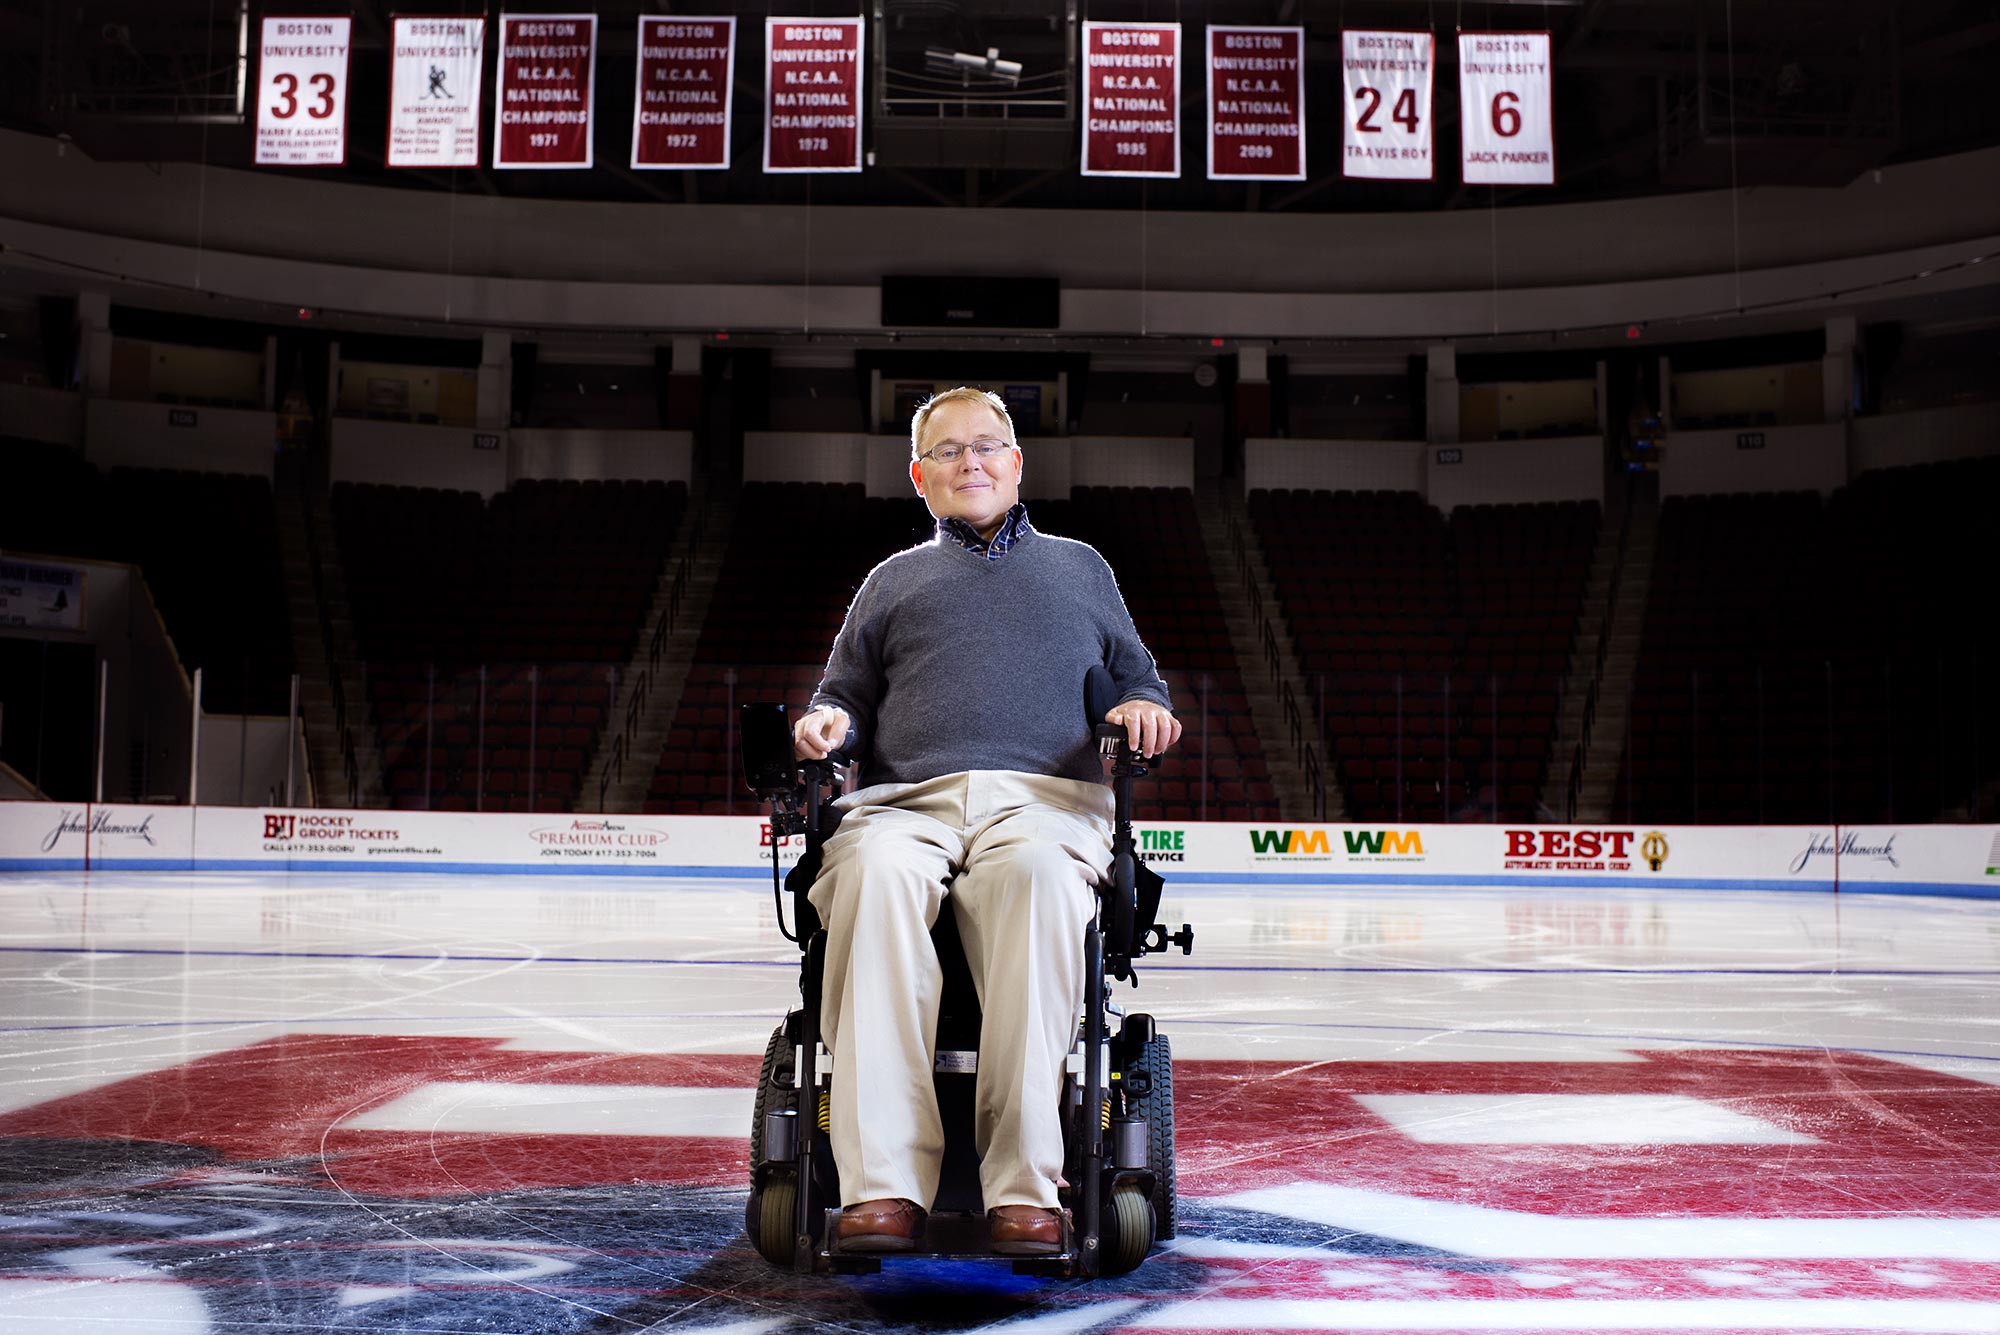 Former Boston University hockey player starts platform to teach